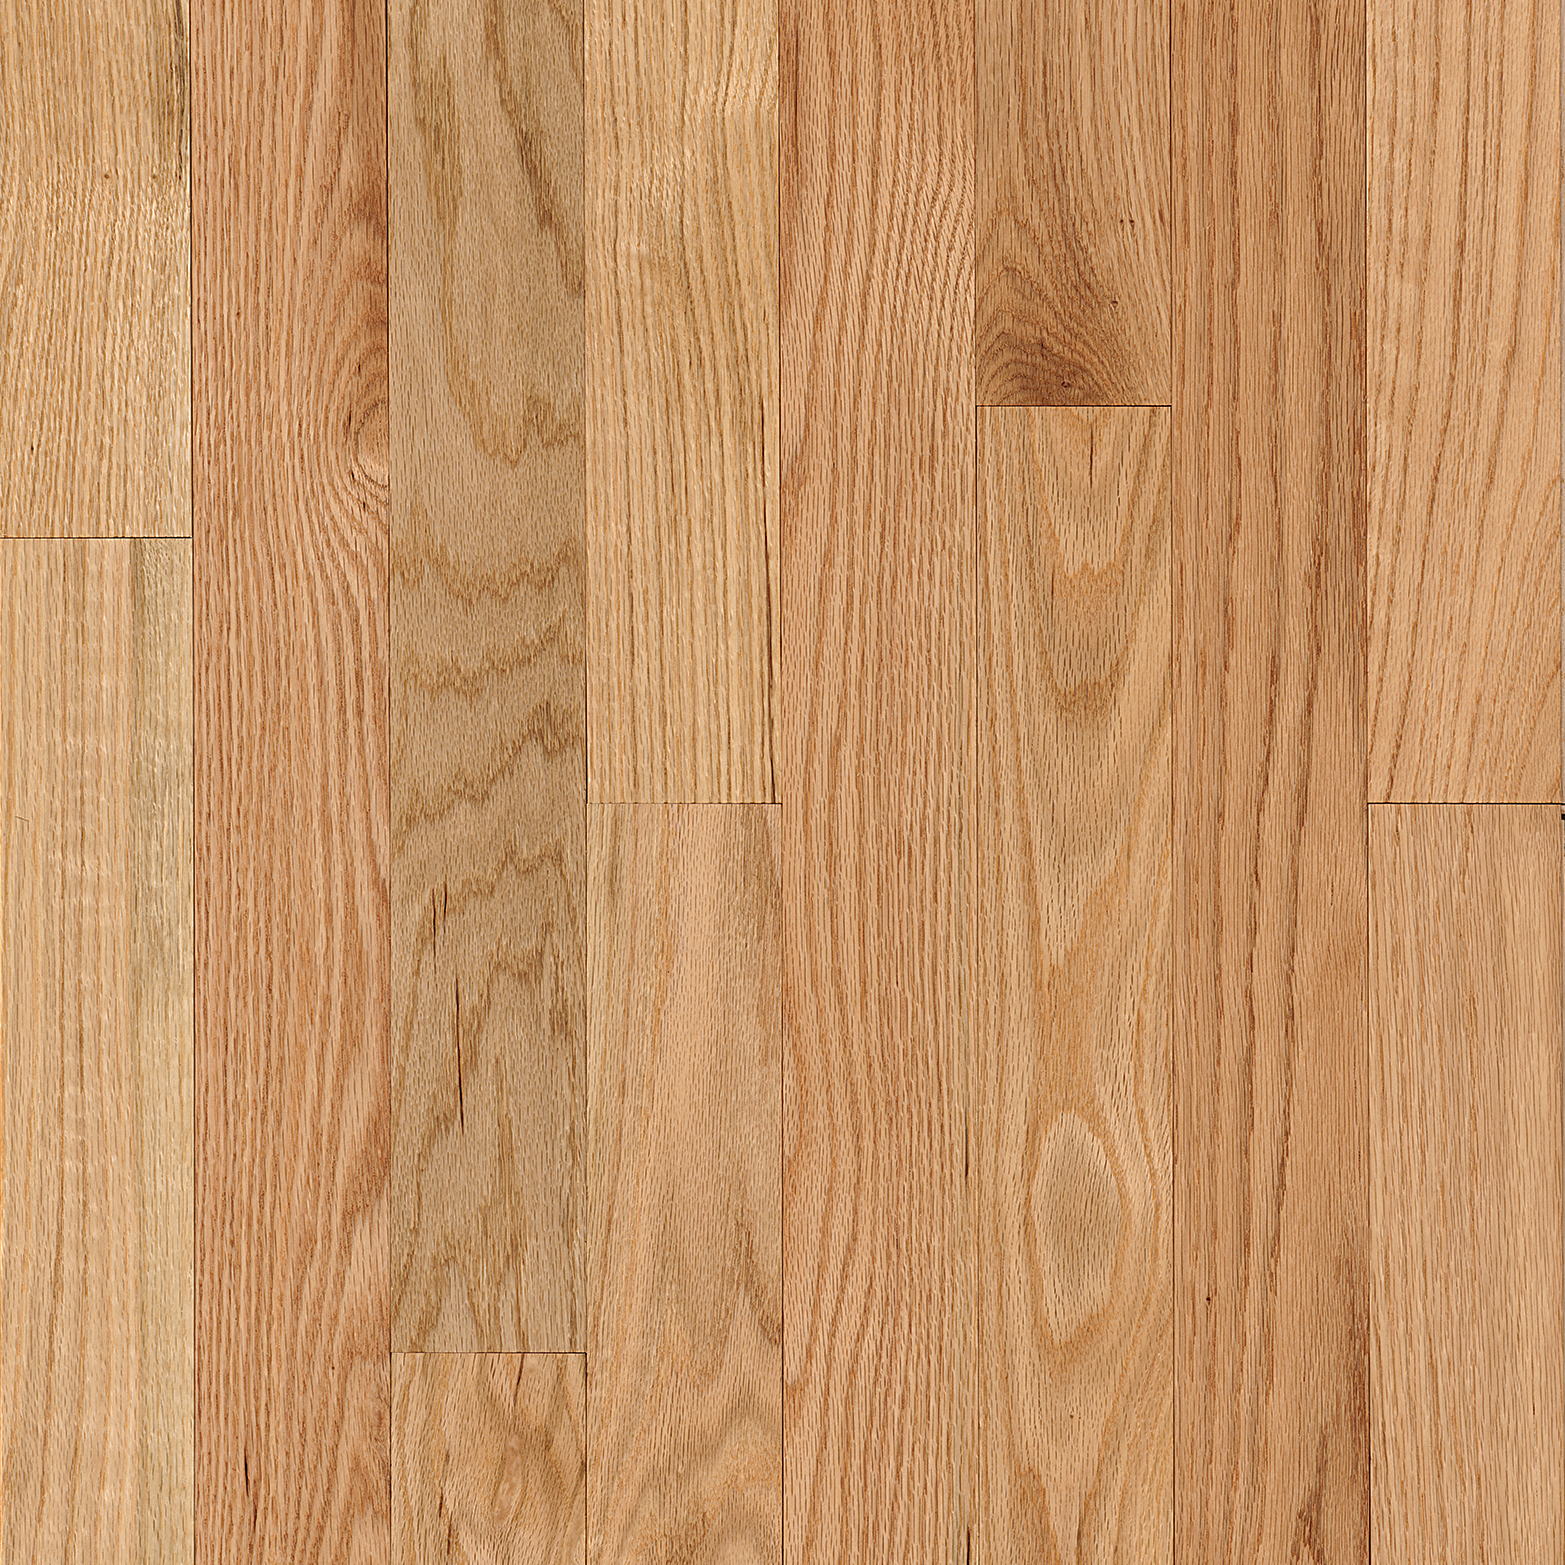 Oak Solid Hardwood C8210, Bruce Red Oak Natural Hardwood Flooring